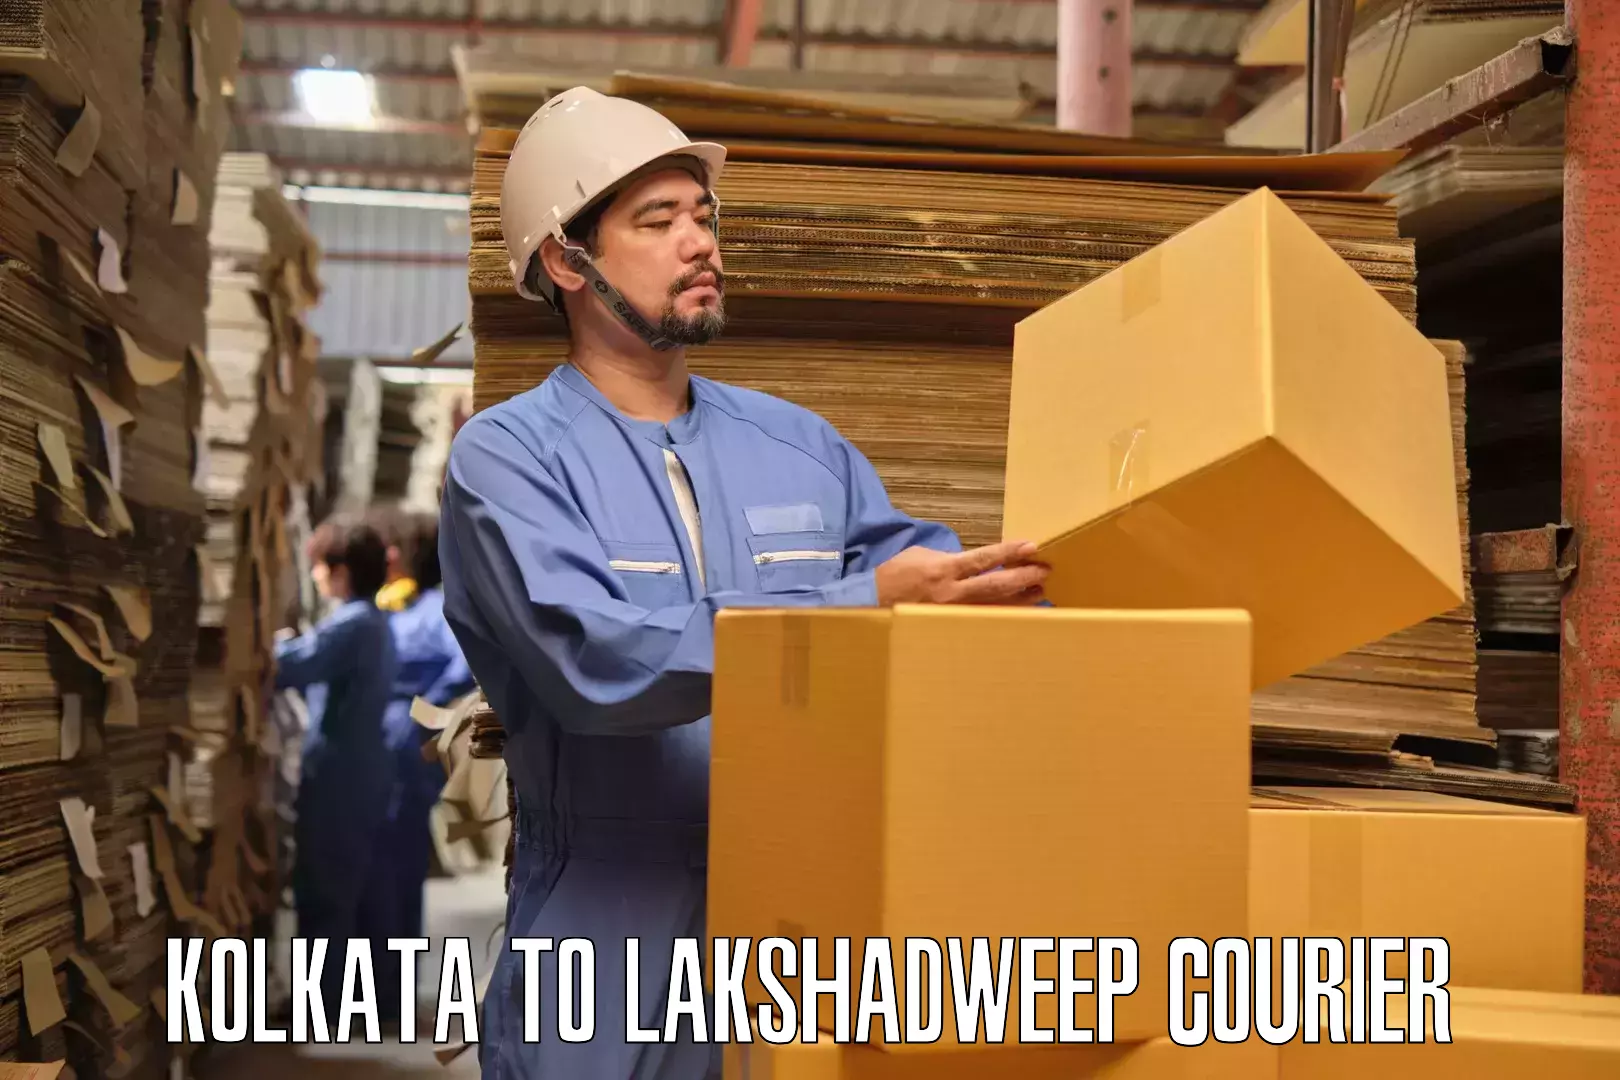 Furniture transport service Kolkata to Lakshadweep